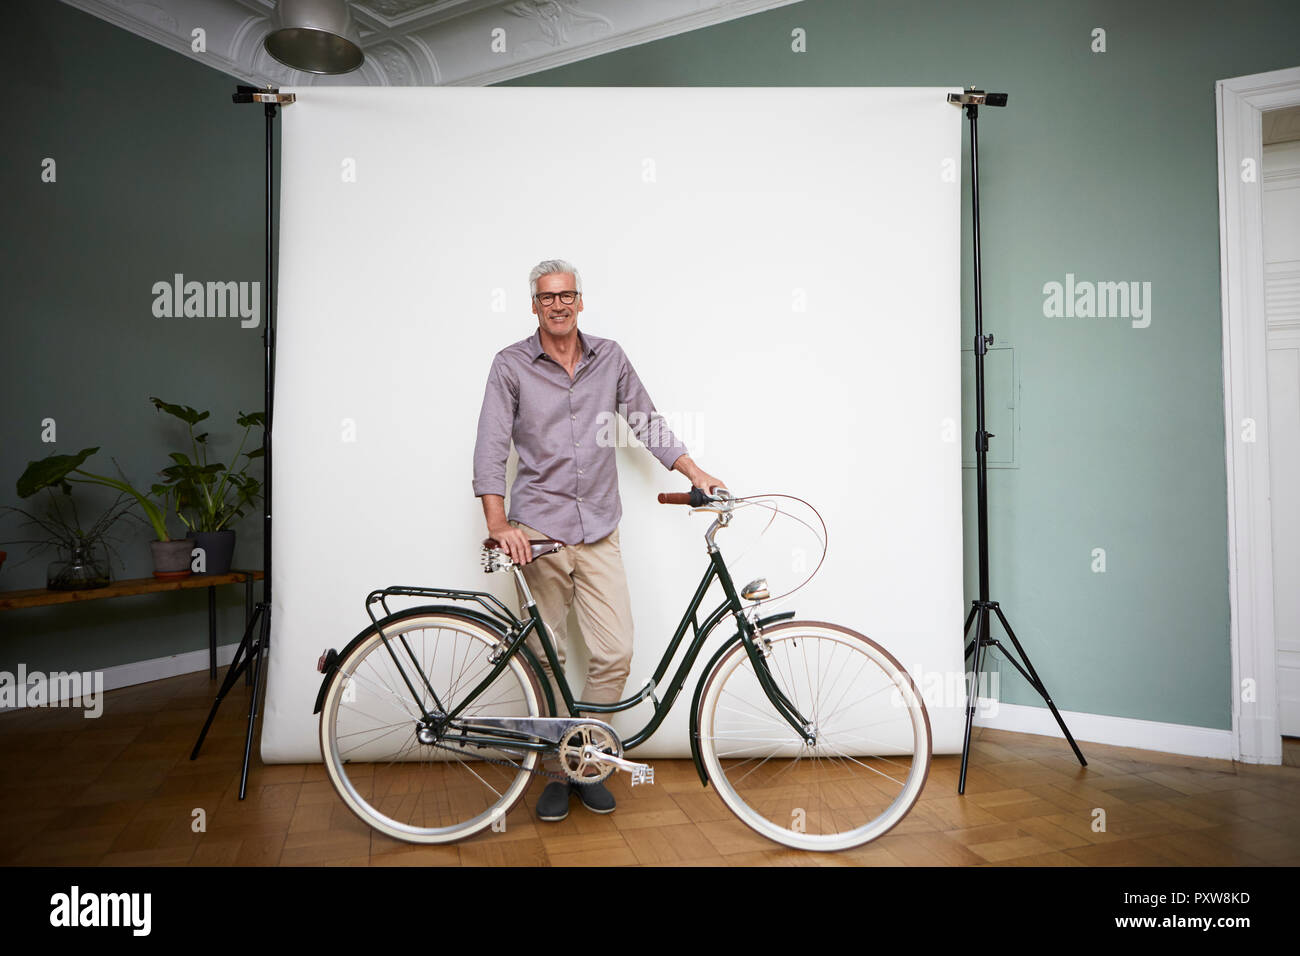 Le portrait de l'homme mûr qui posent avec vélo à écran de projection Banque D'Images